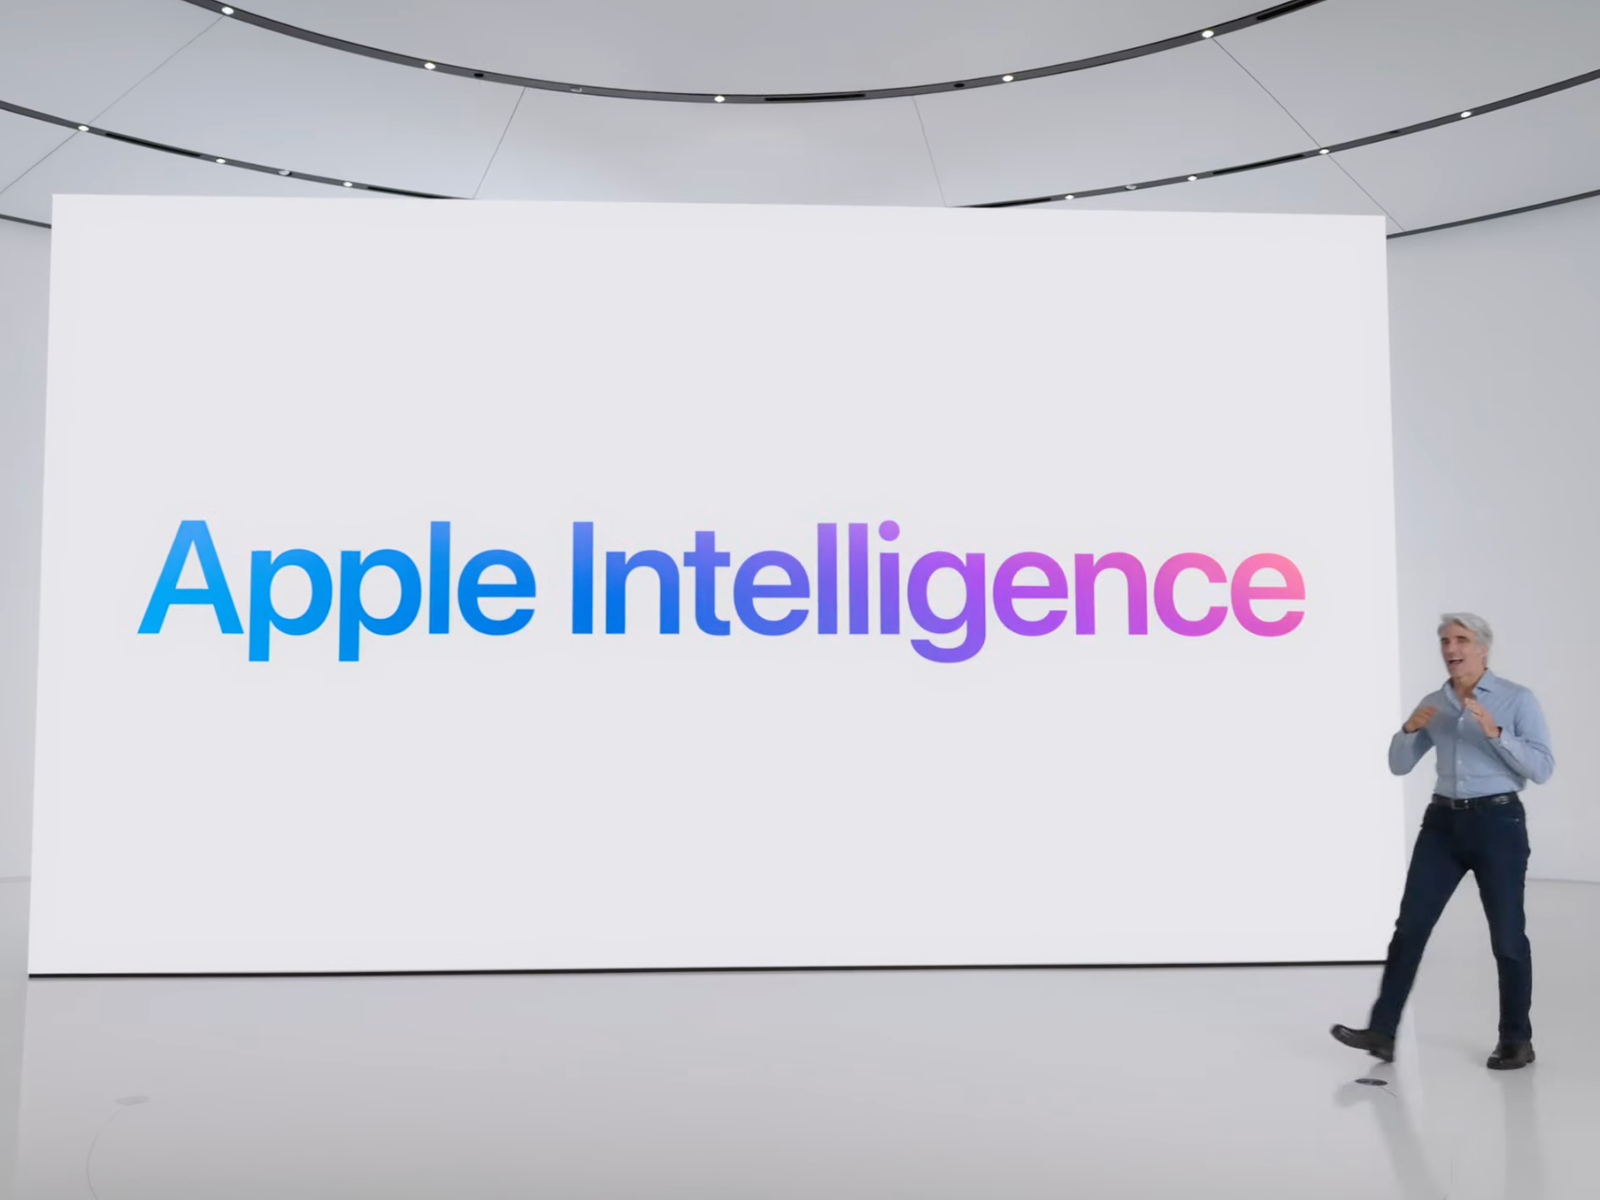 ついにアップルも生成AIを本格活用へ。「Apple Intelligence」がもたらす“利益”と新たな課題